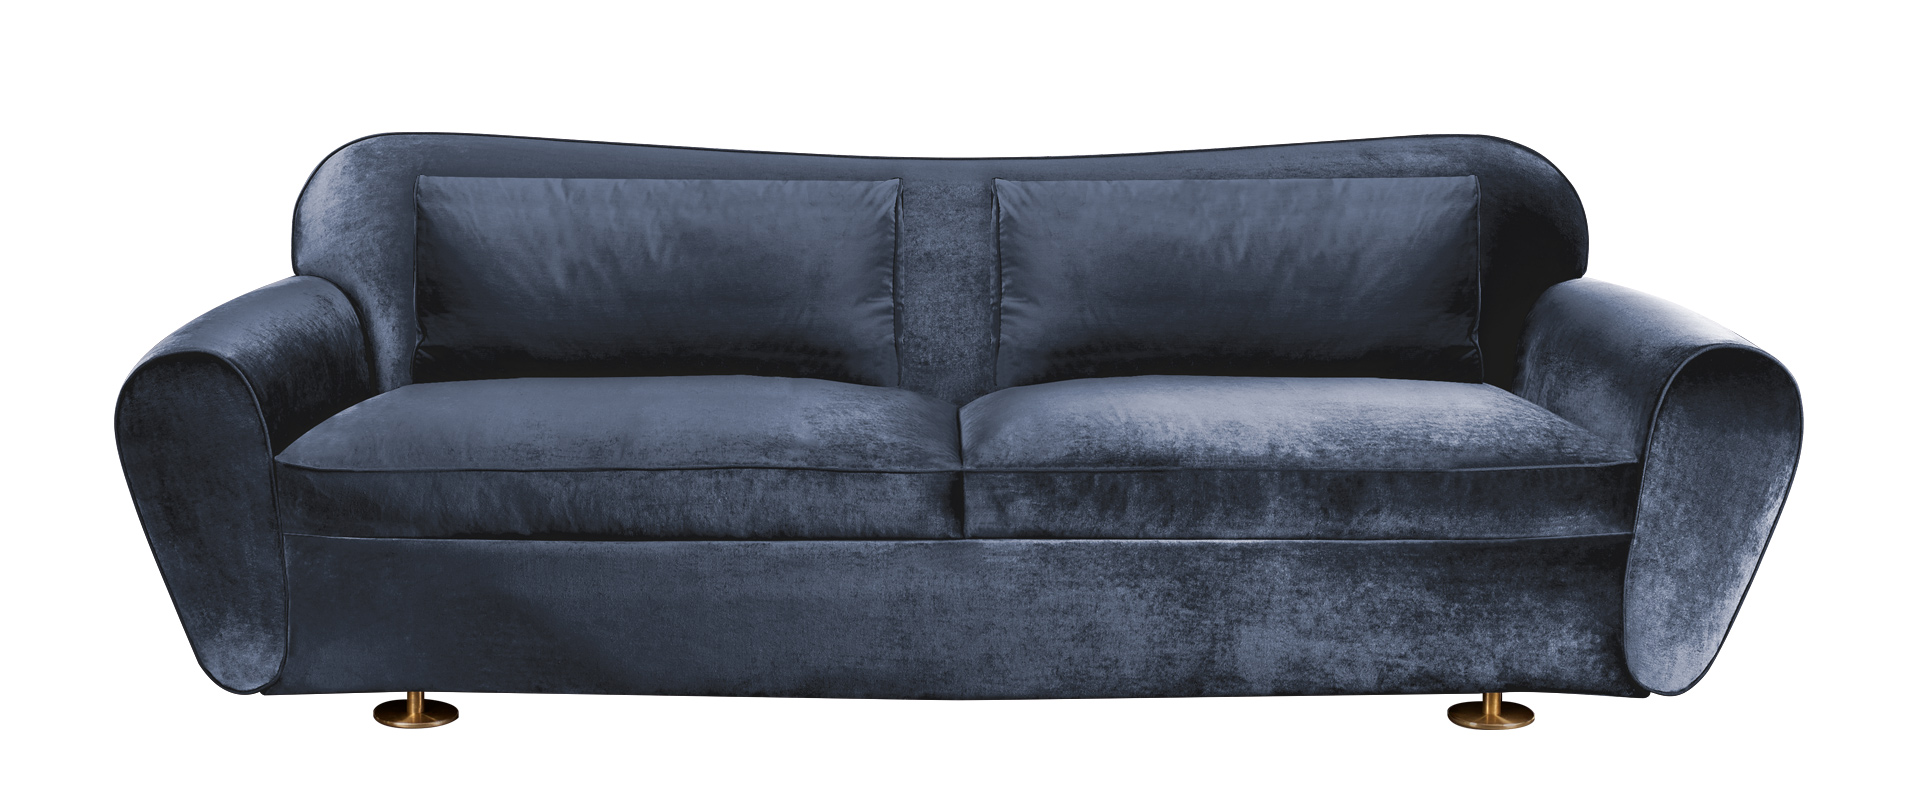 „Artù“ ist ein Sofa mit Stoffbezug und Bronzefüßen, aus dem Katalog von Promemoria | Promemoria